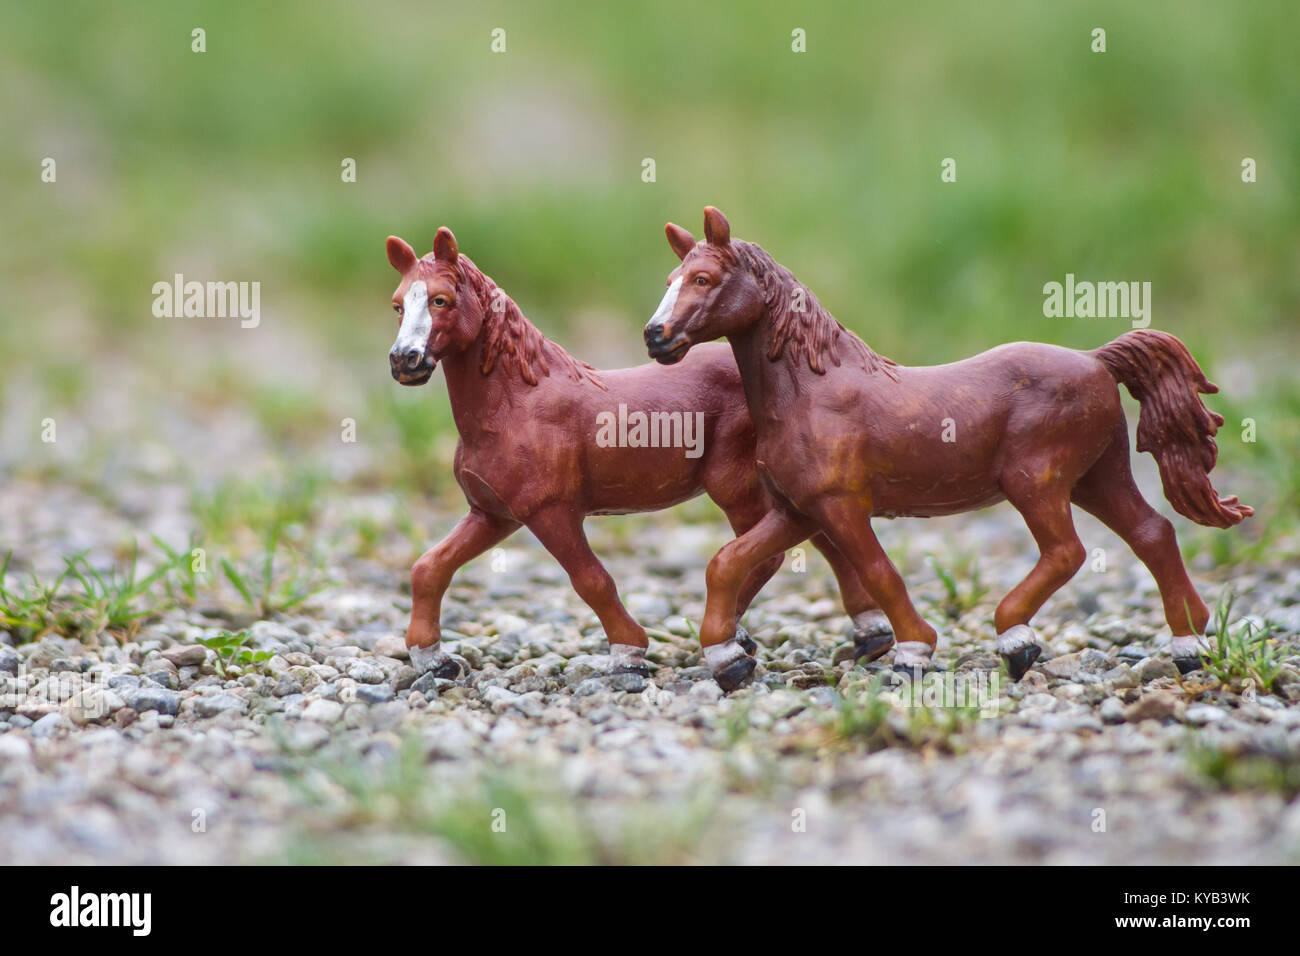 Les jouets pour enfants, modèle chevaux Schleich Banque D'Images